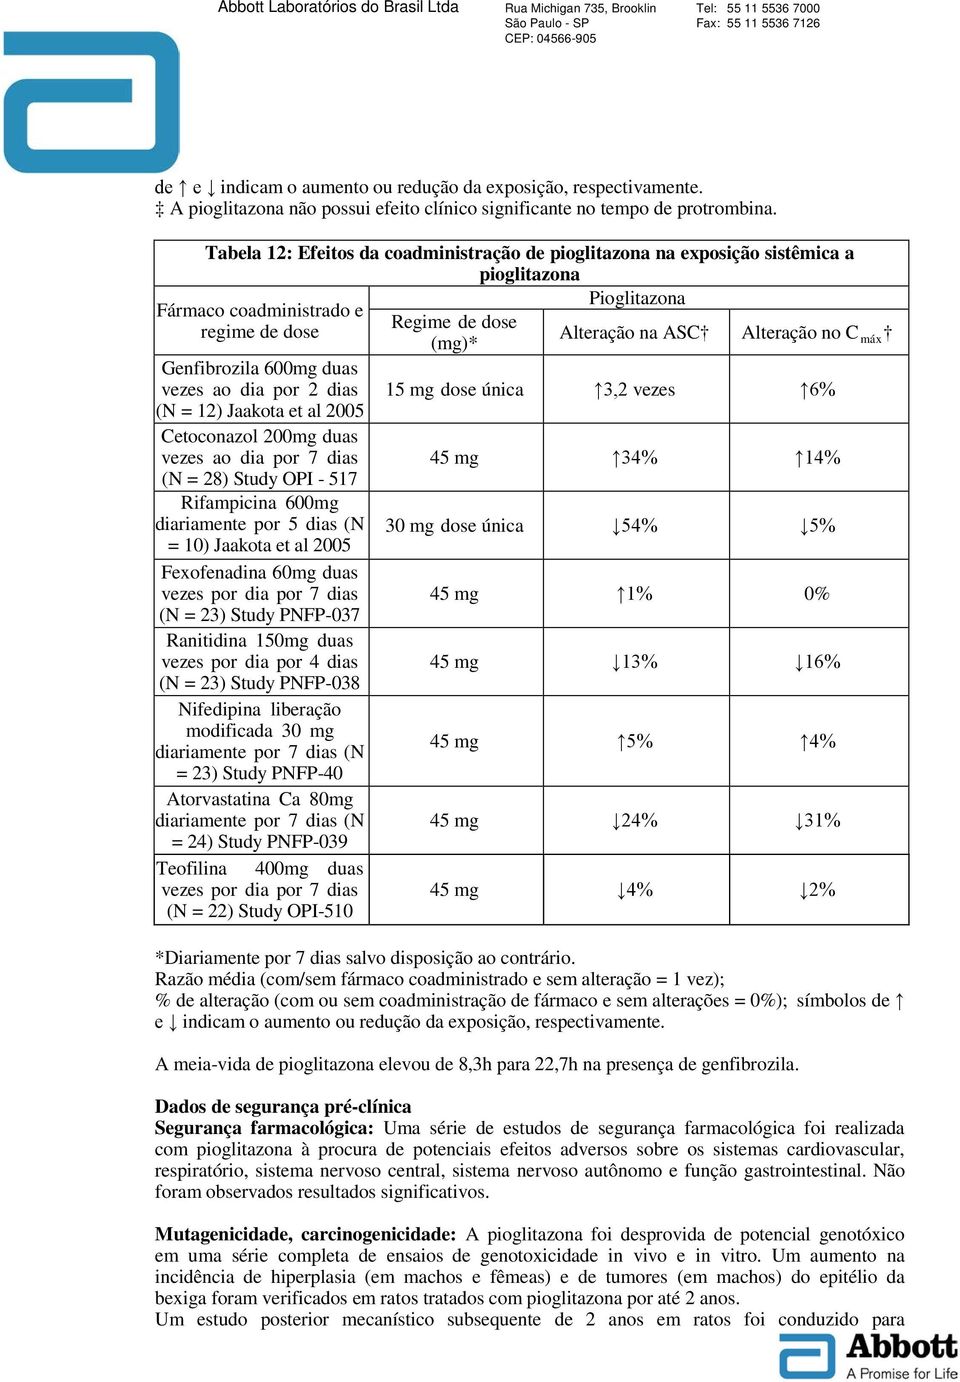 máx Genfibrozila 600mg duas vezes ao dia por 2 dias 15 mg dose única 3,2 vezes 6% (N = 12) Jaakota et al 2005 Cetoconazol 200mg duas vezes ao dia por 7 dias 45 mg 34% 14% (N = 28) Study OPI - 517